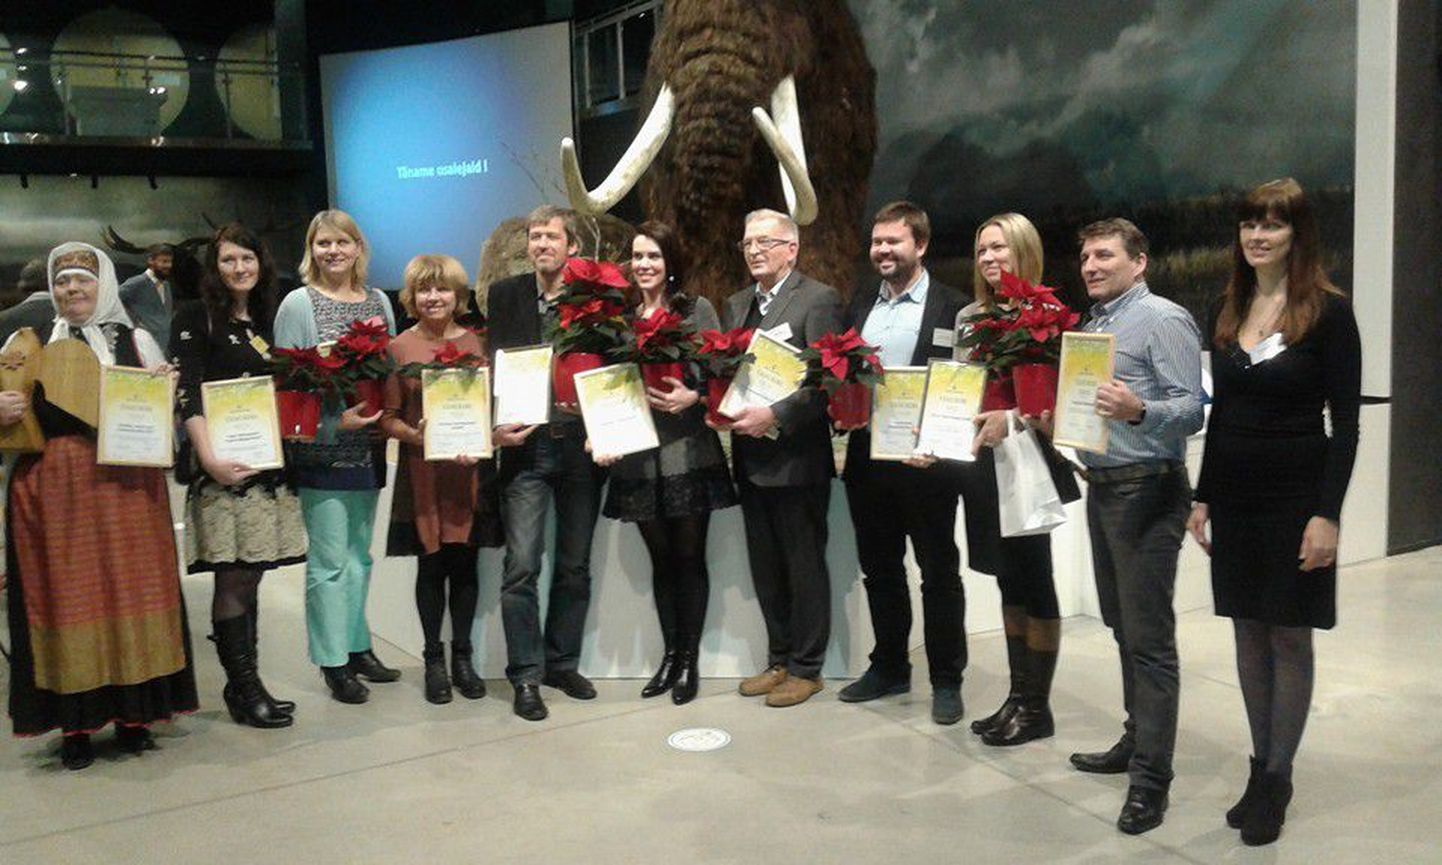 Seto talu Eesti Vabaõhumuuseumis jõudis nominentide hulka parima turismiobjekti kategoorias ja Soome-ugri kultuuripealinn 2015 Setomaa, Obinitsa parima turismisündmuse kategoorias.